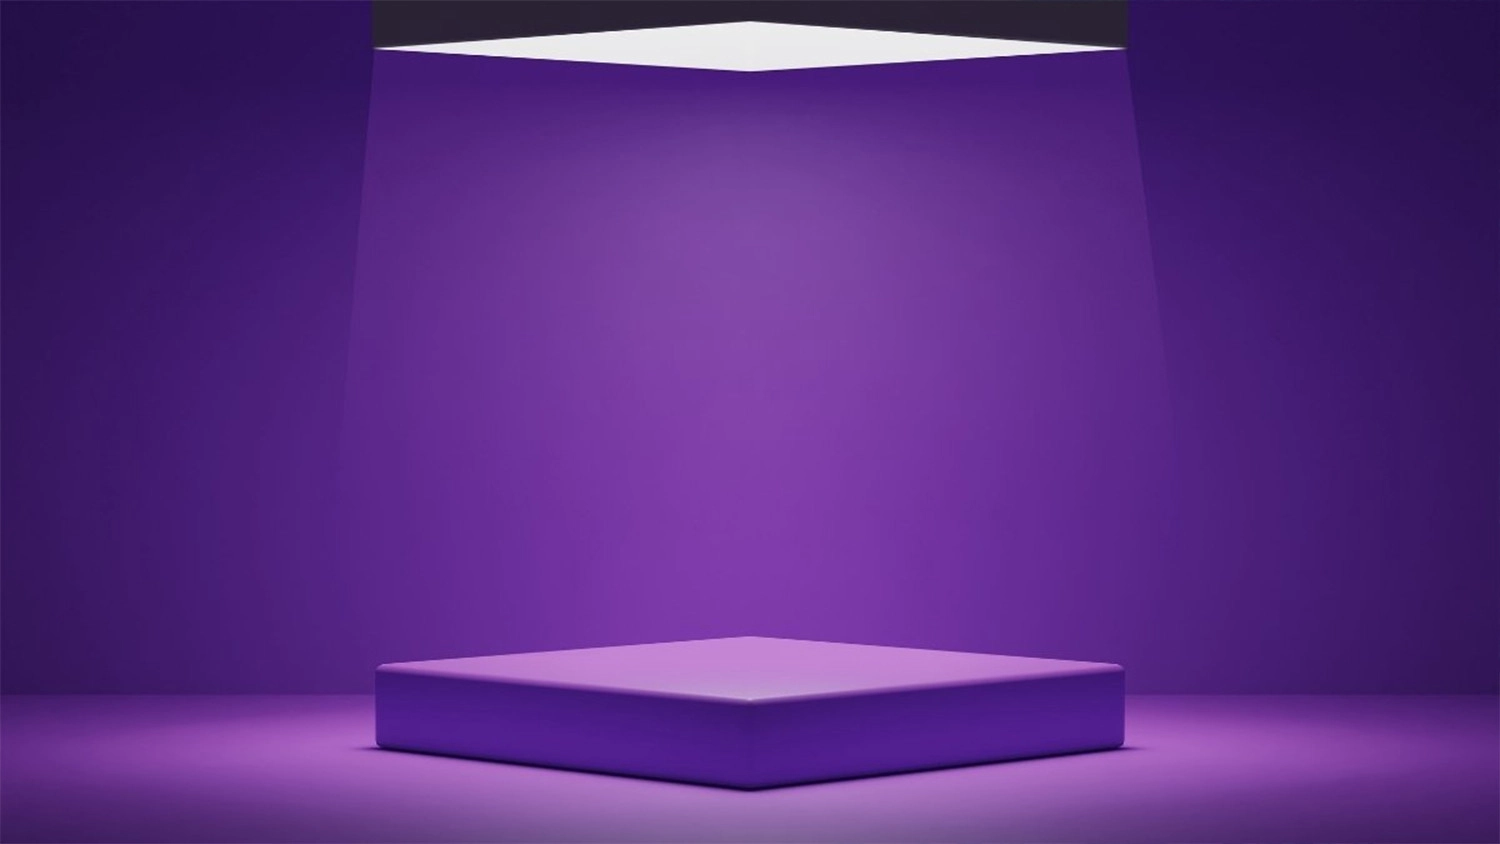 Hình nền Powerpoint cho bài thuyết trình 3D màu tím